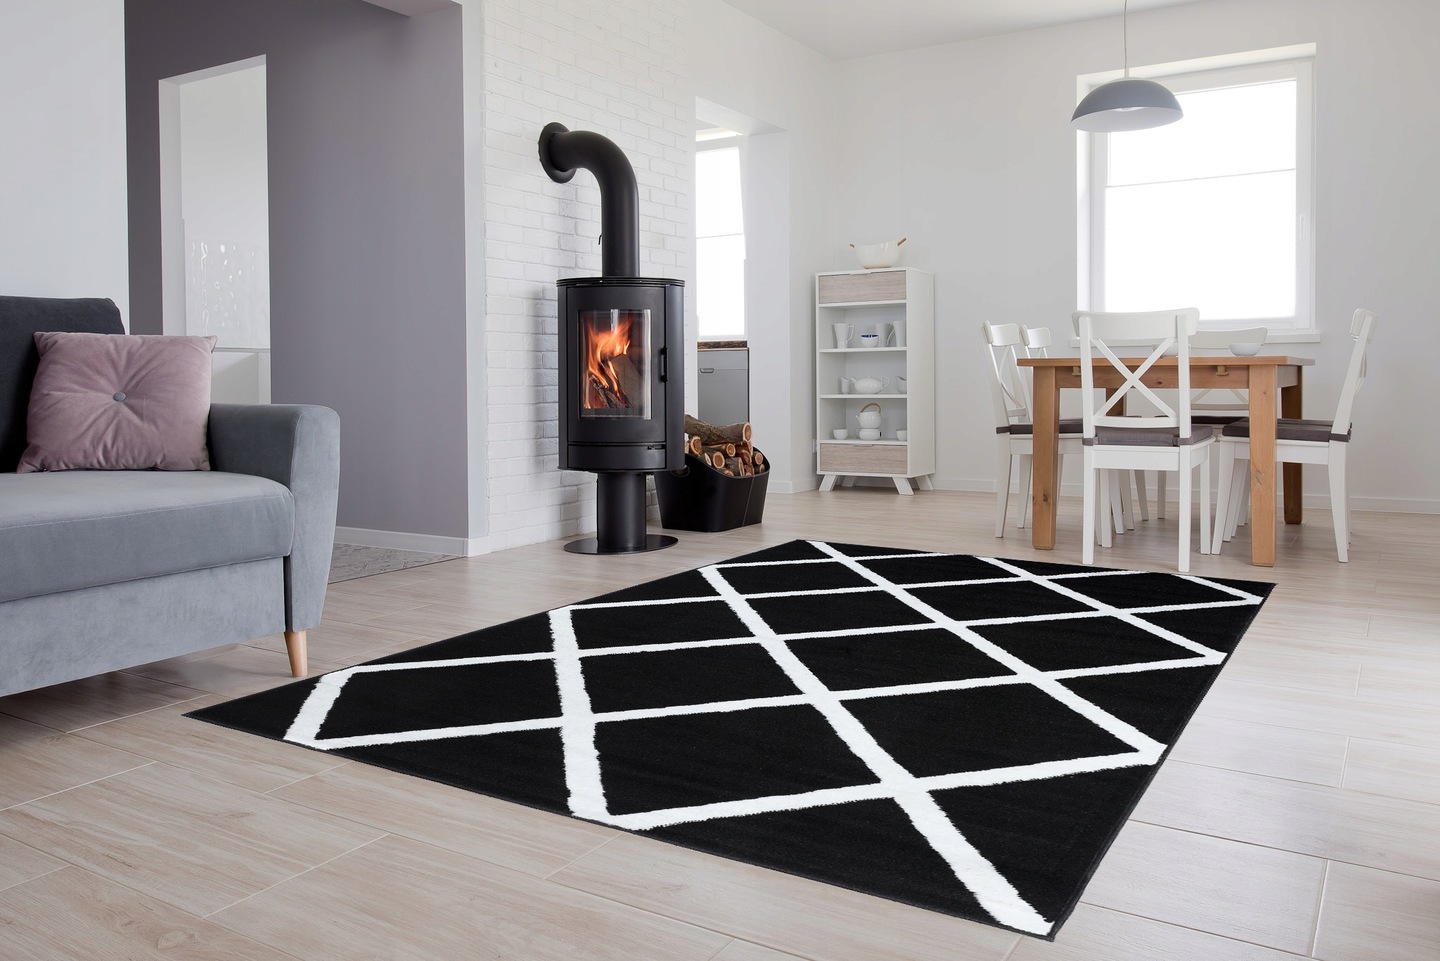 Moderný koberec HOME art - čierne štvorce